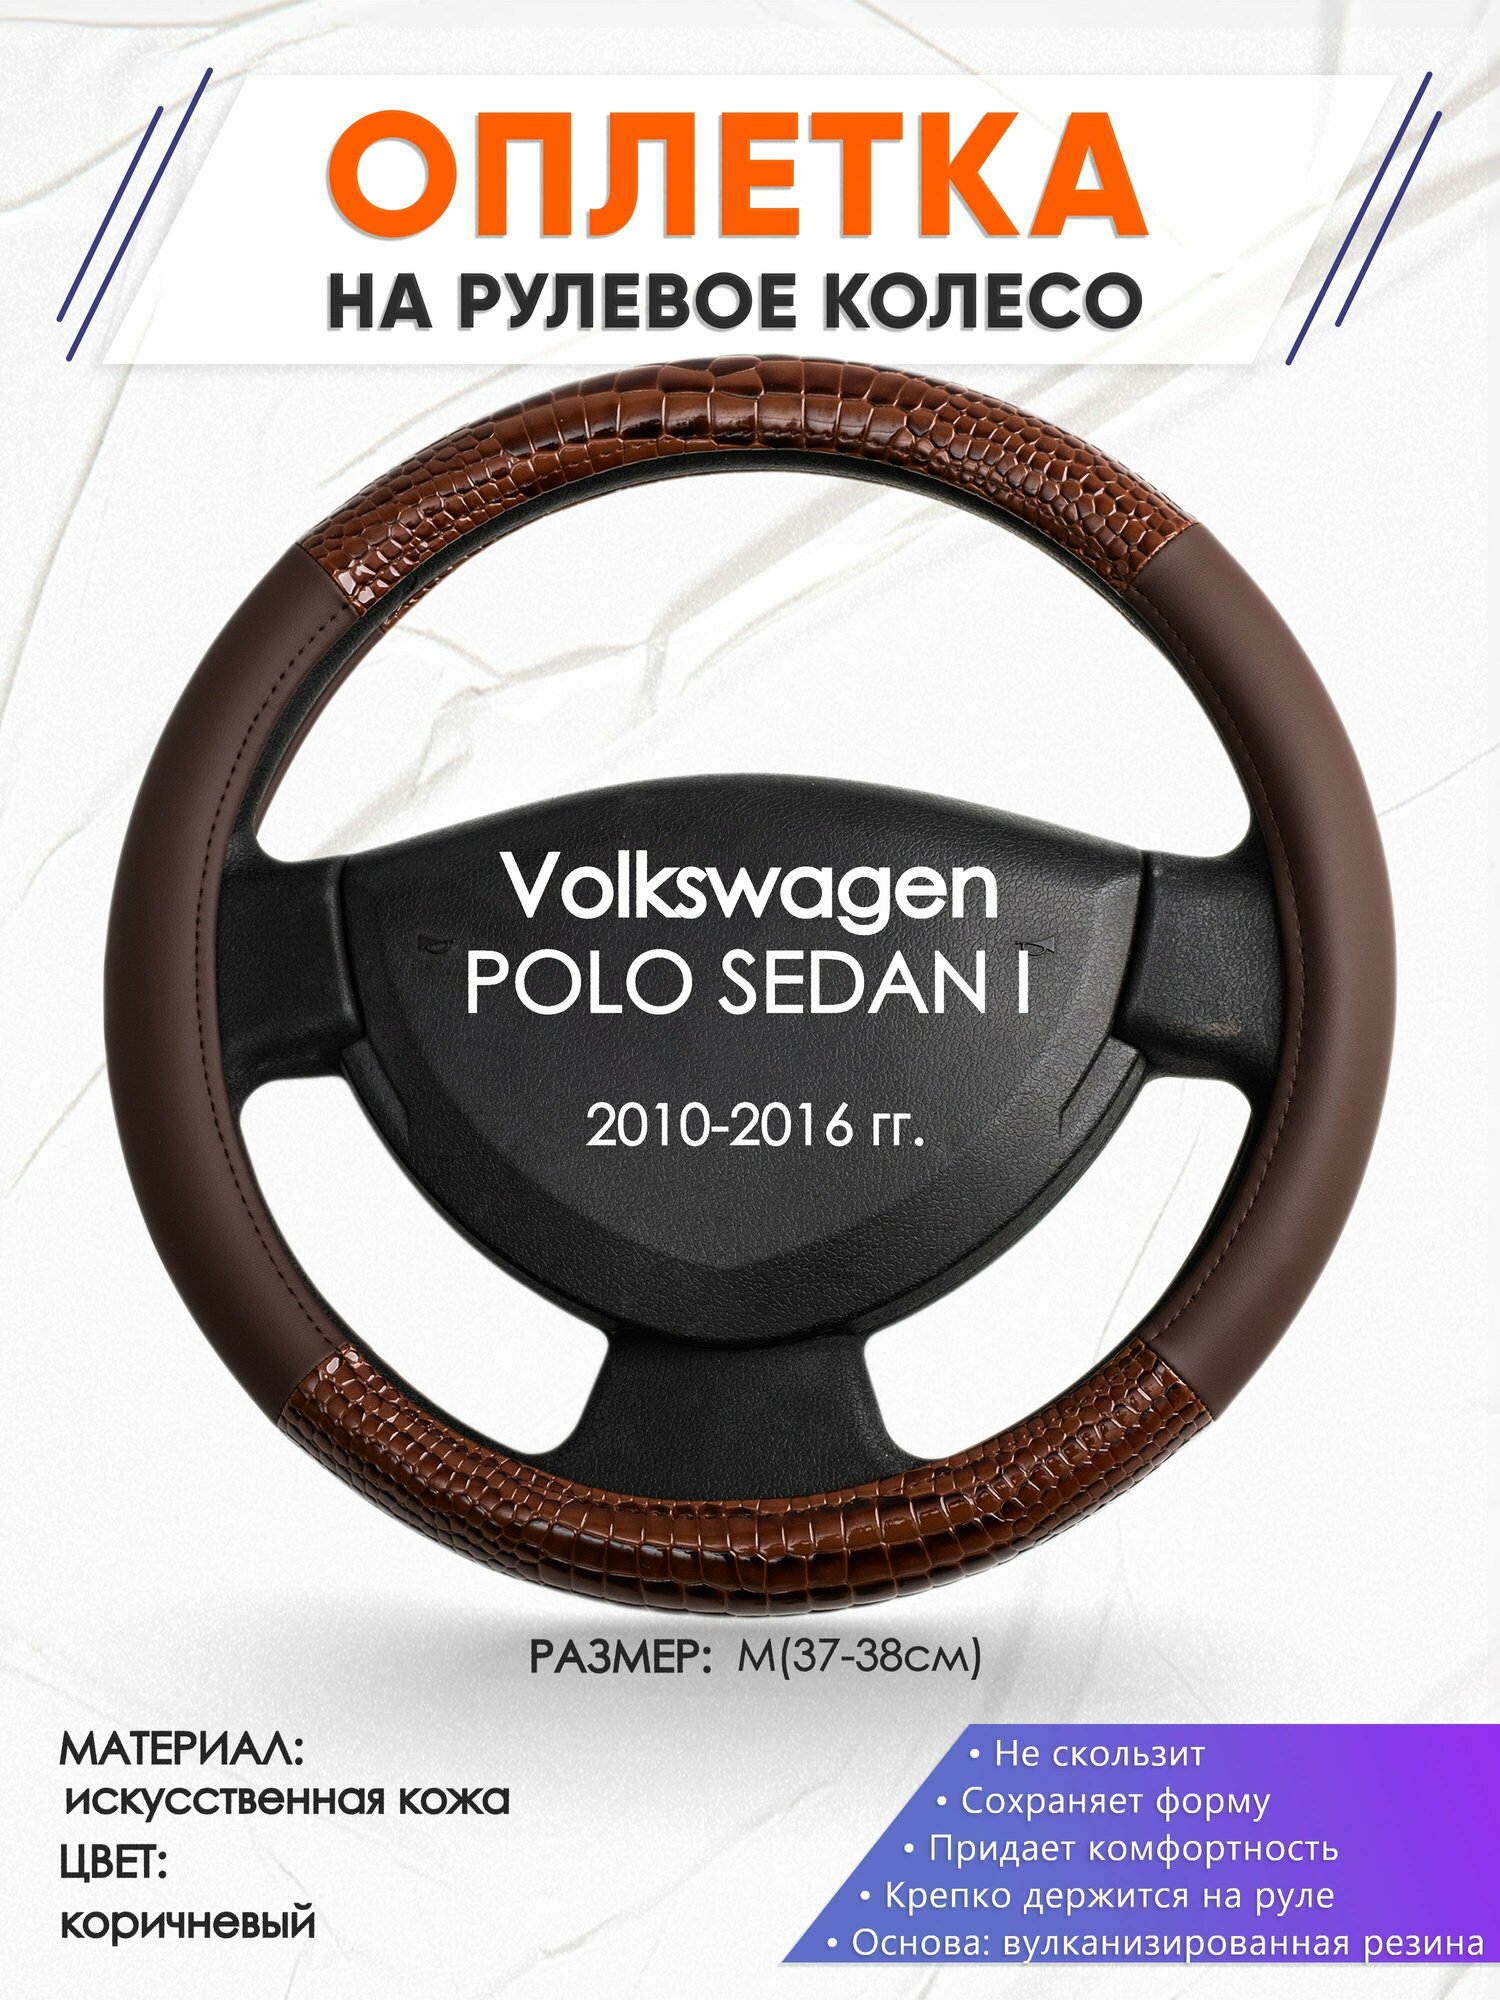 Оплетка наруль для Volkswagen POLO SEDAN I(Фольксваген Поло Седан 1) 2010-2016 годов выпуска, размер M(37-38см), Искусственная кожа 85